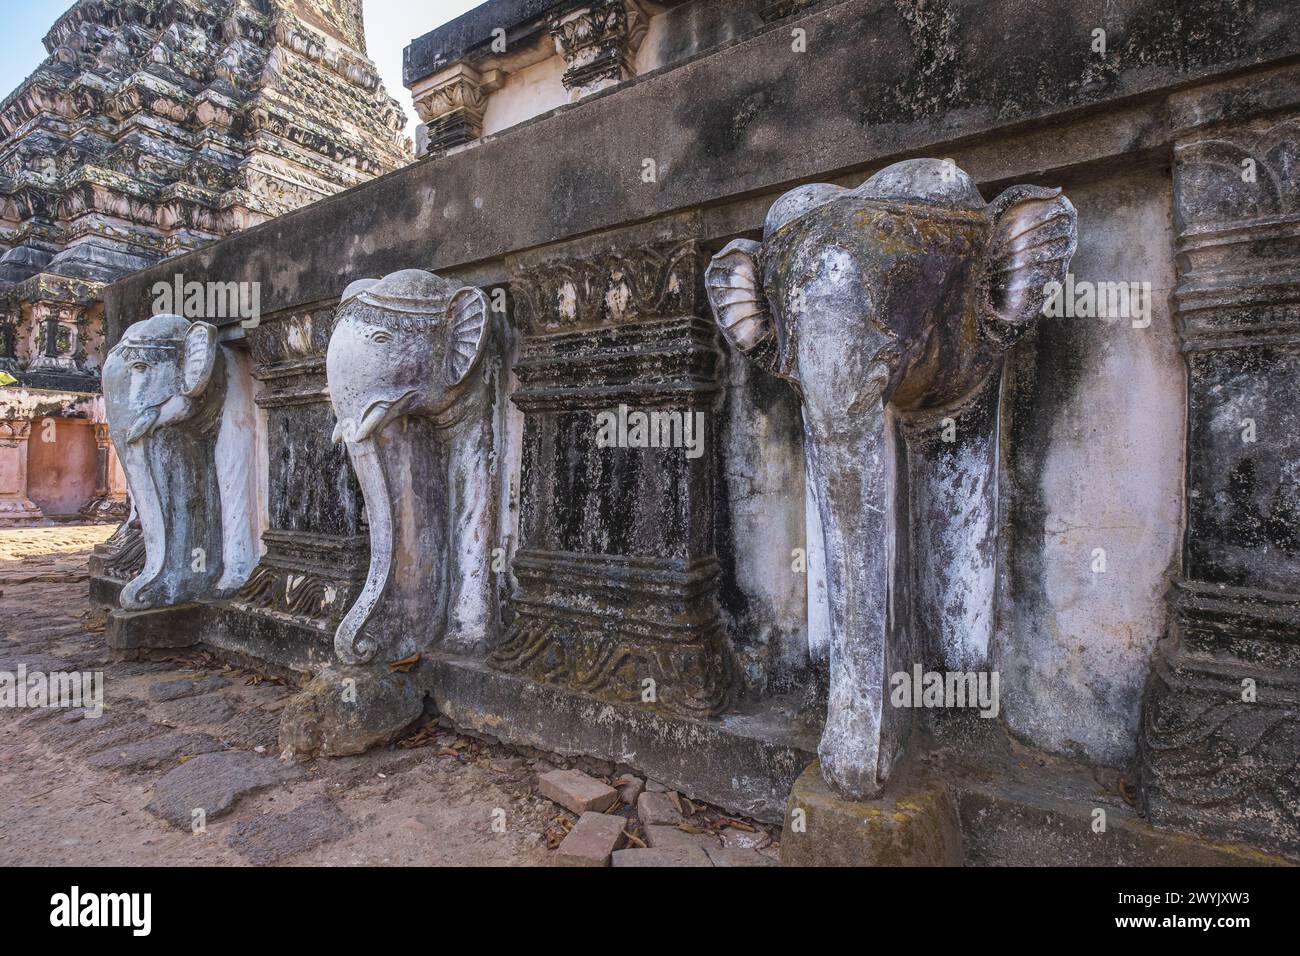 Cambogia, provincia di Kandal, Oudong, ex capitale della Cambogia per quasi 250 anni fino al 1866 e monumentale necropoli reale sparsa su una collina Foto Stock